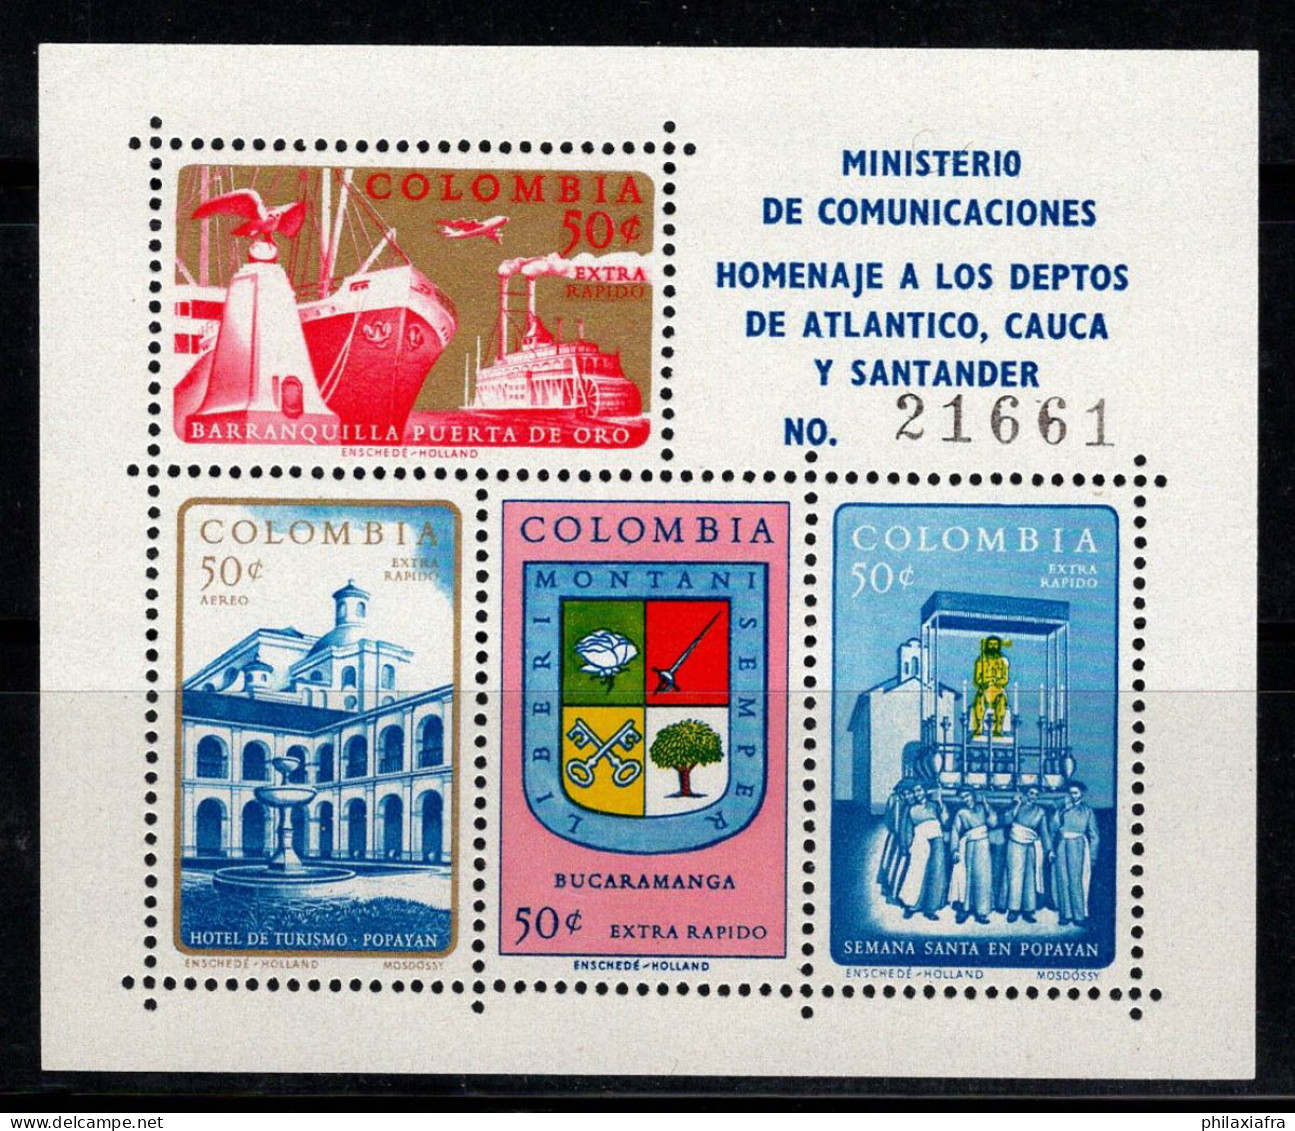 Colombie 1961 Mi. Bl. 24 Bloc Feuillet 100% Neuf ** Océan Atlantique - Colombia